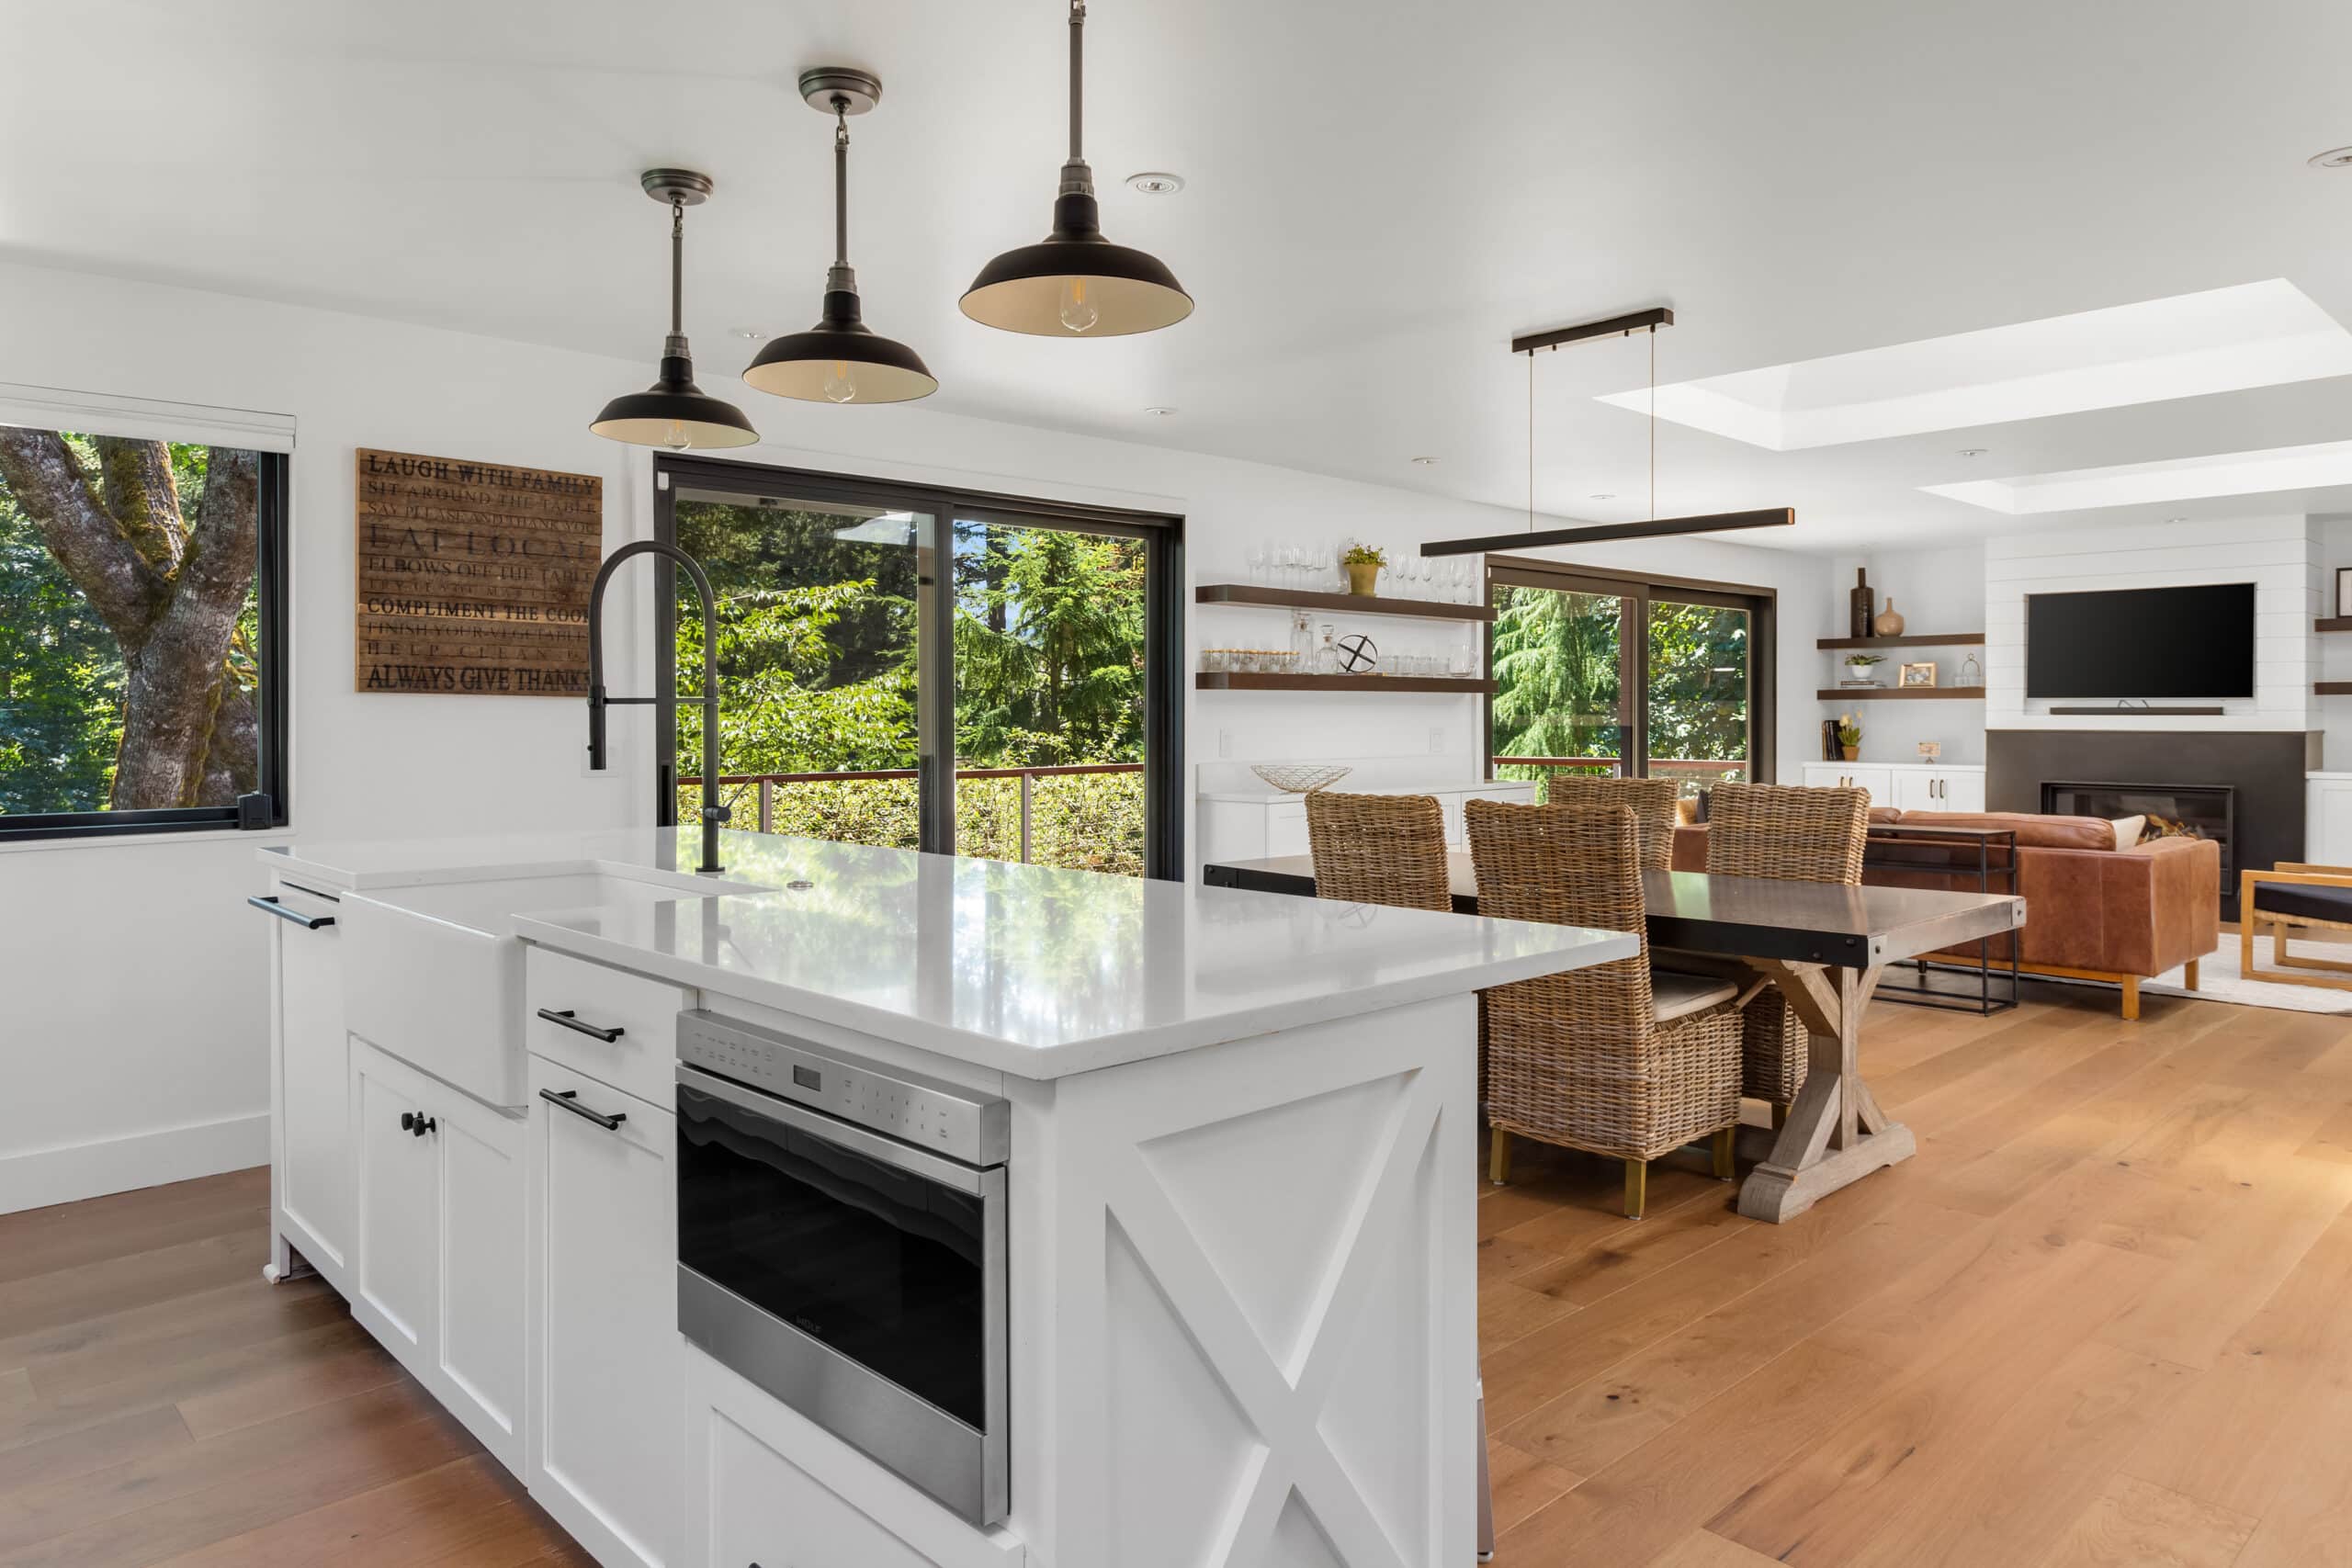 Luxury farmhouse kitchen design